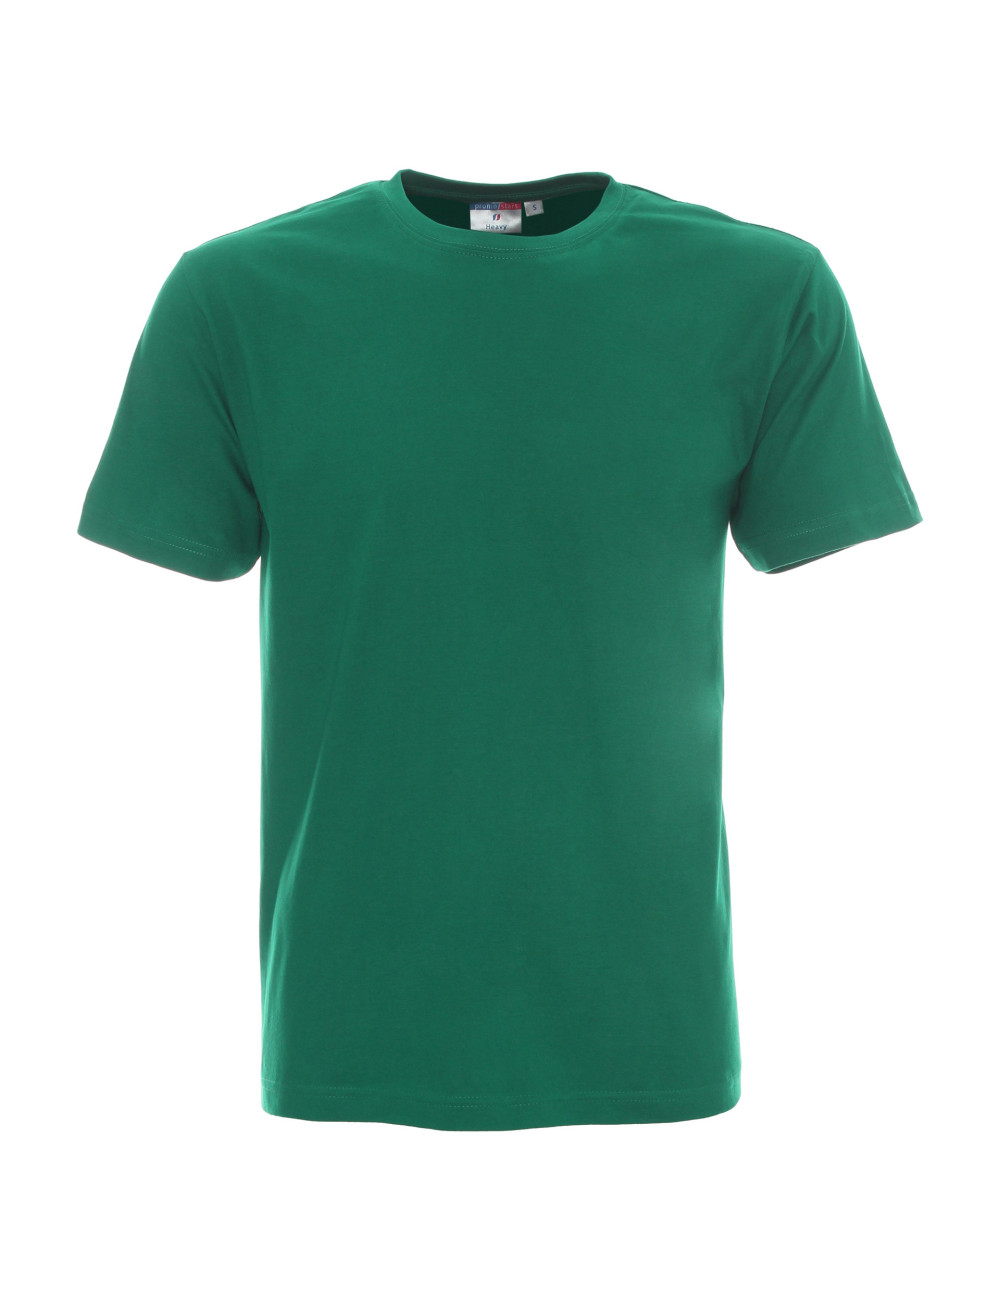 Schweres Herren-T-Shirt 170 grün von Promostars